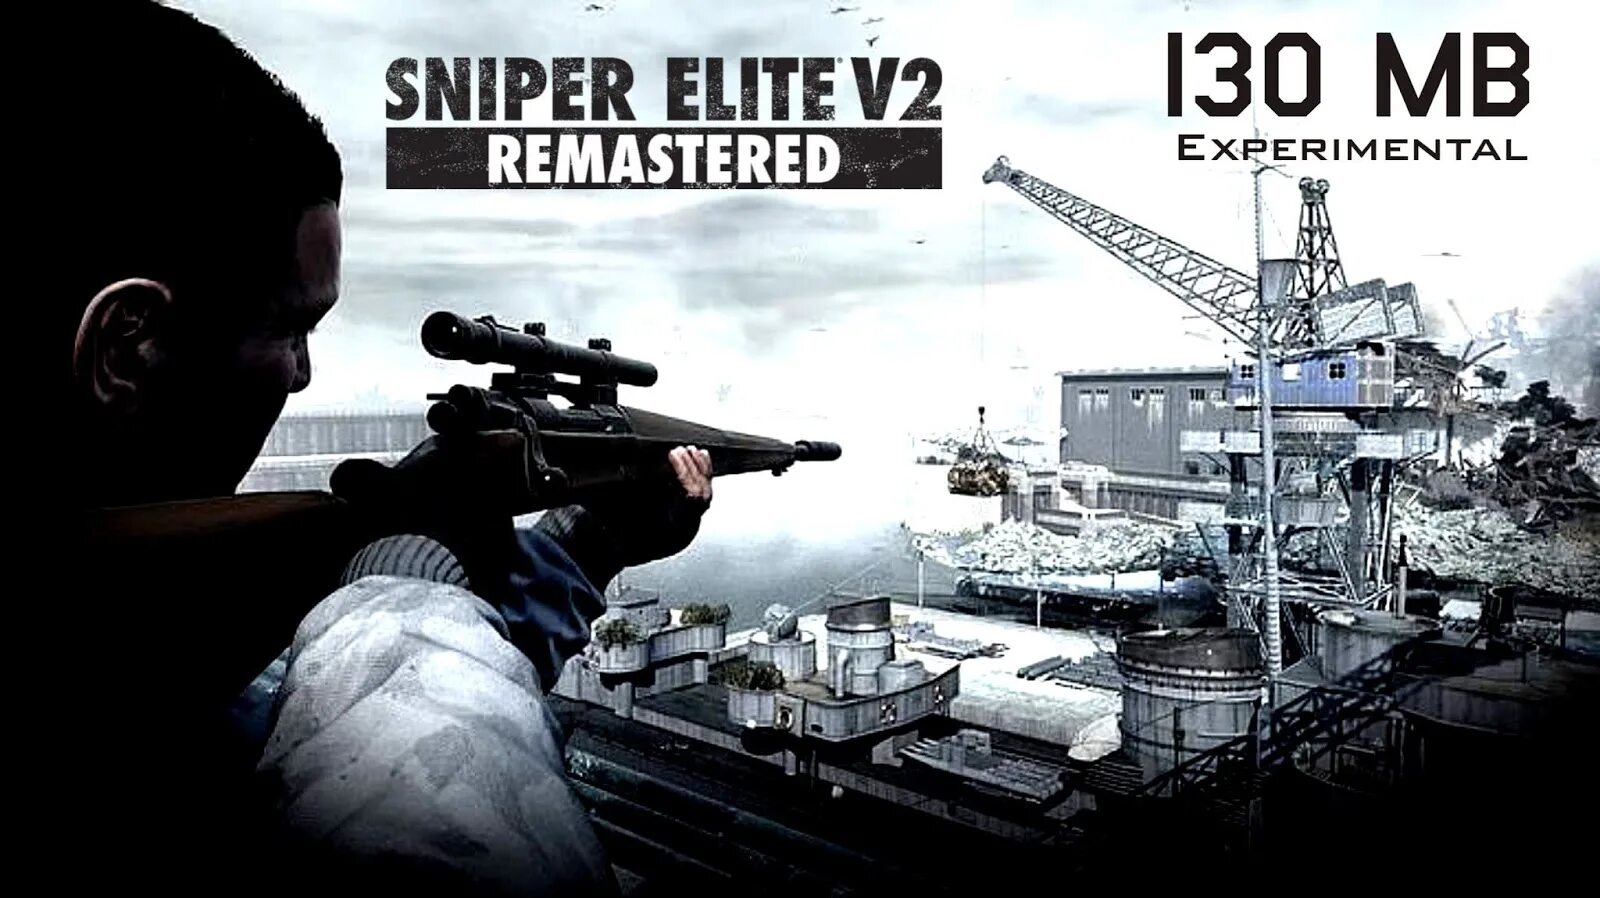 Sniper Elite v2 Remastered. Sniper Elite 2 Remastered. Снайпер Элит в2 Ремастеред. Снайпер Элит 2 ремастер.